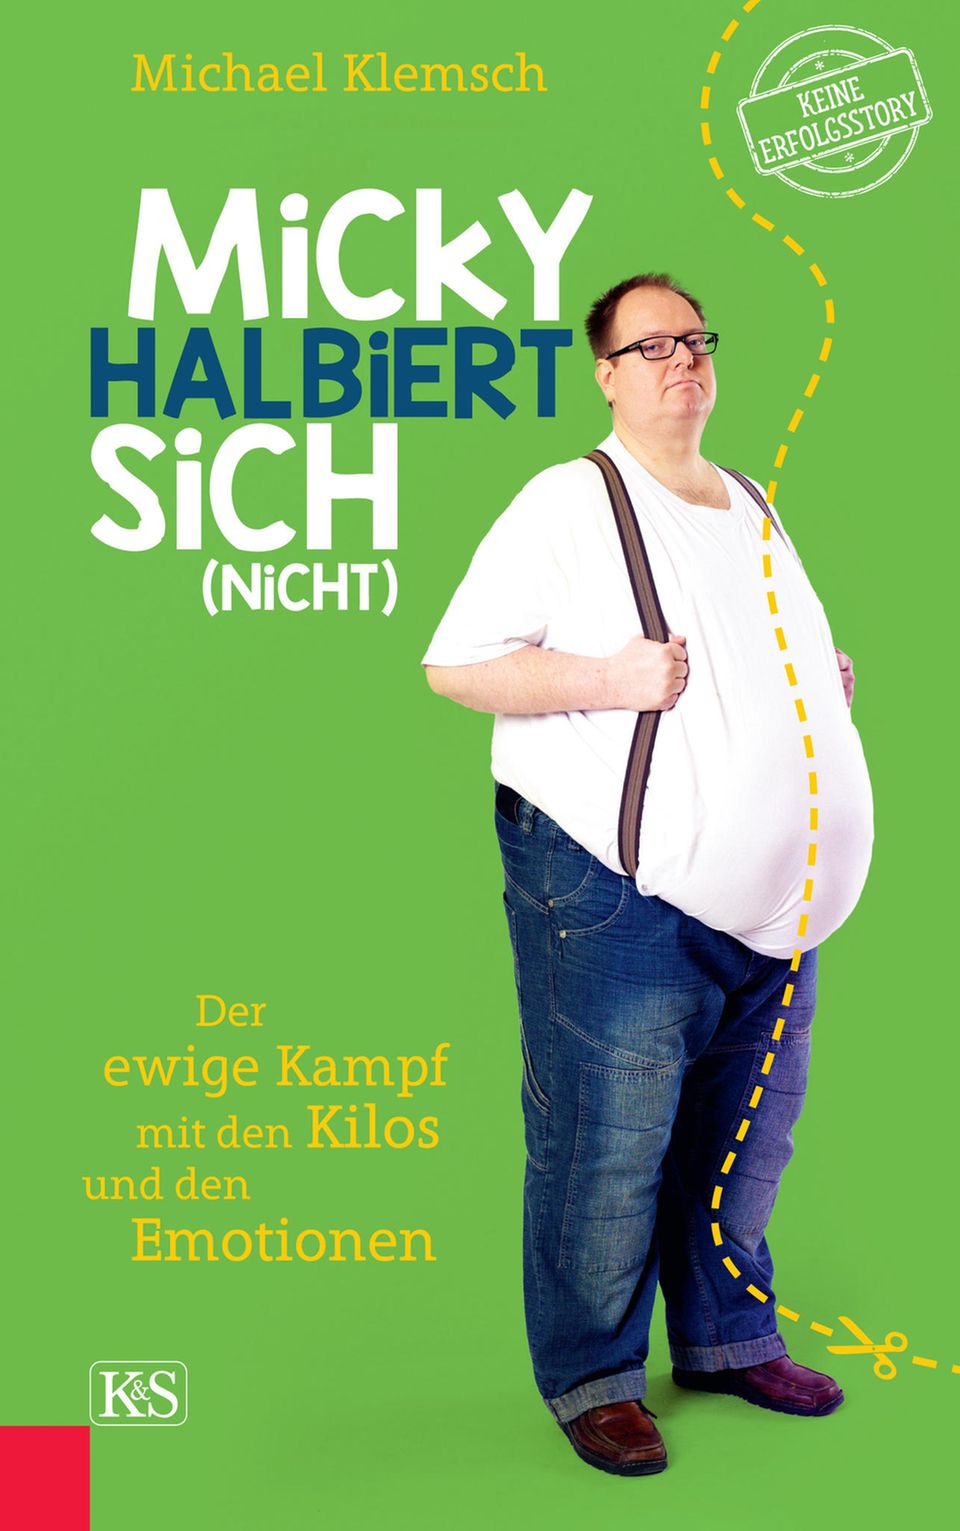 Michael Klemsch  "Micky halbiert sich (nicht) – Der ewige Kampf mit den Kilos und den Emotionen"  168 Seiten  Kremayr & Scheriau  22 Euro